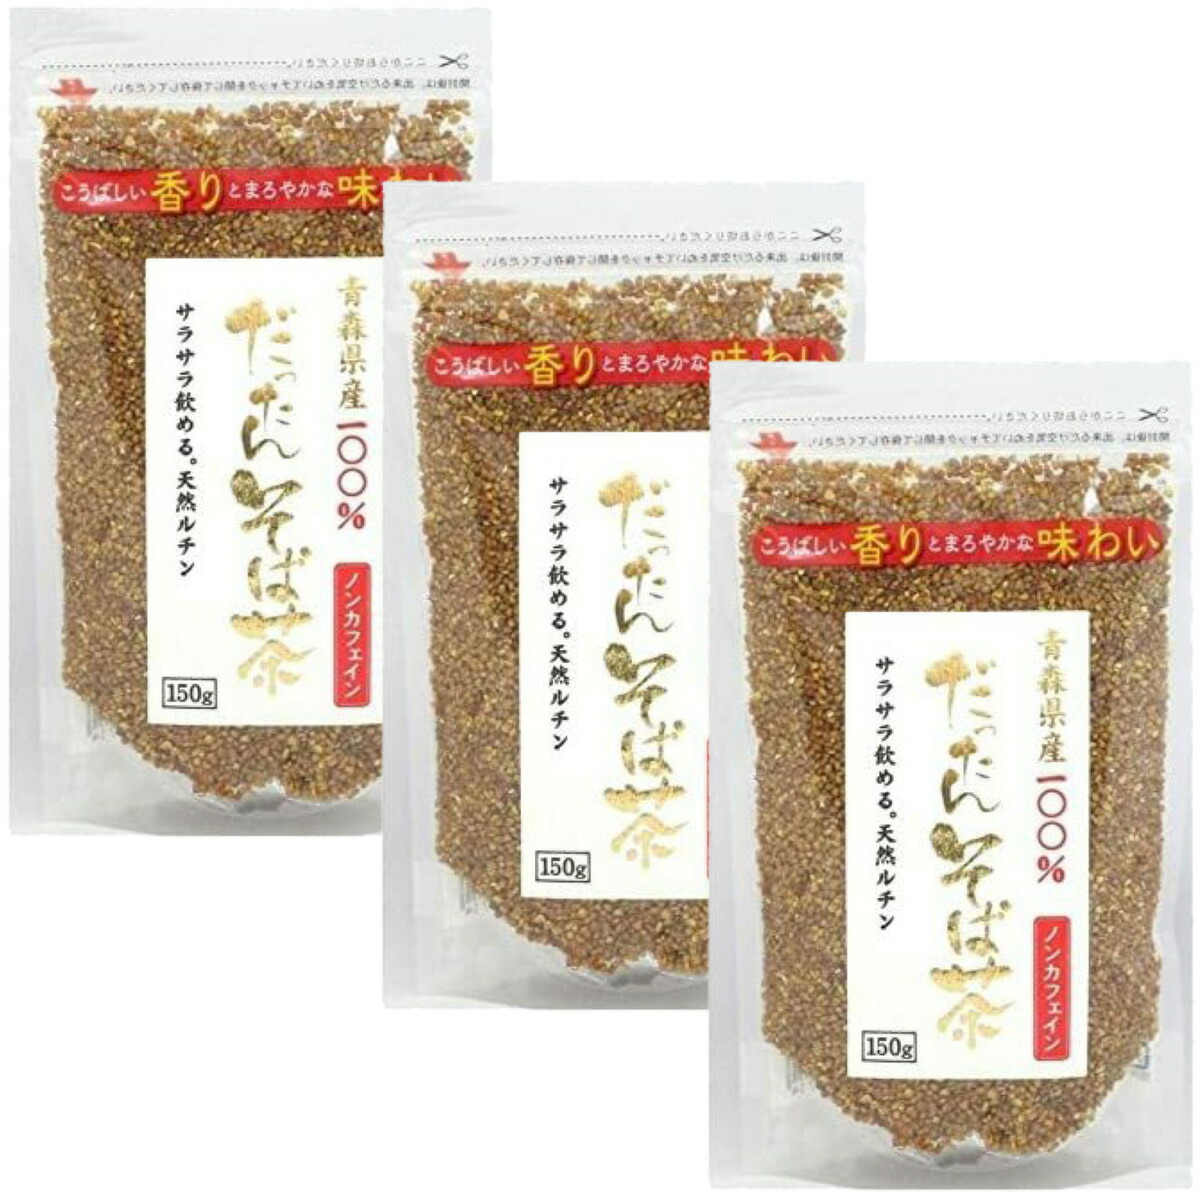 天保堂 青森県産 だったんそば茶 150g×3袋セット メーカー正規品 ノンカフェイン 送料無料